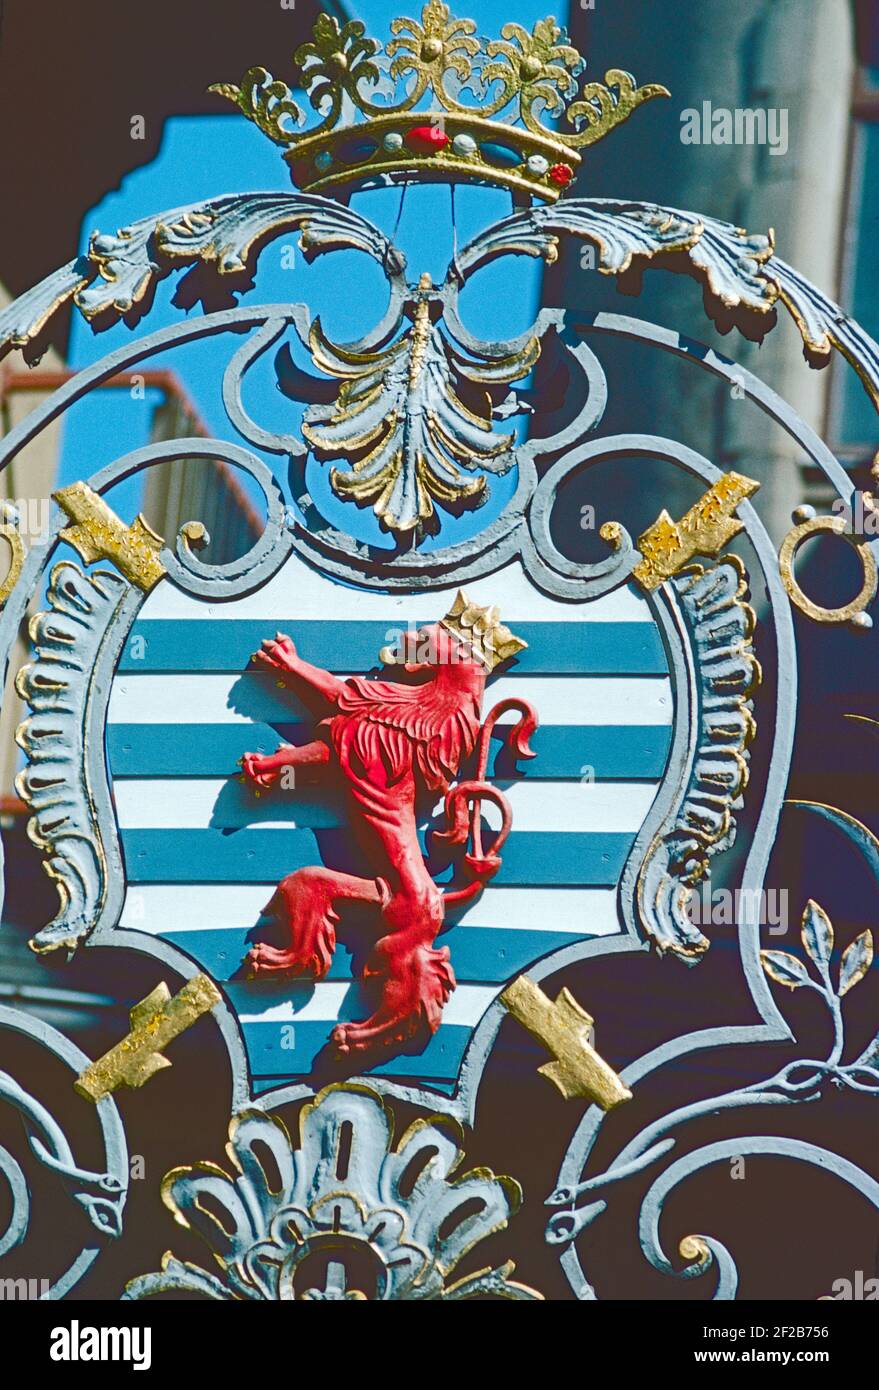 Luxemburgo. El escudo de Luxemburgo representado en las puertas del palacio real de la Ciudad Vieja. Foto de stock